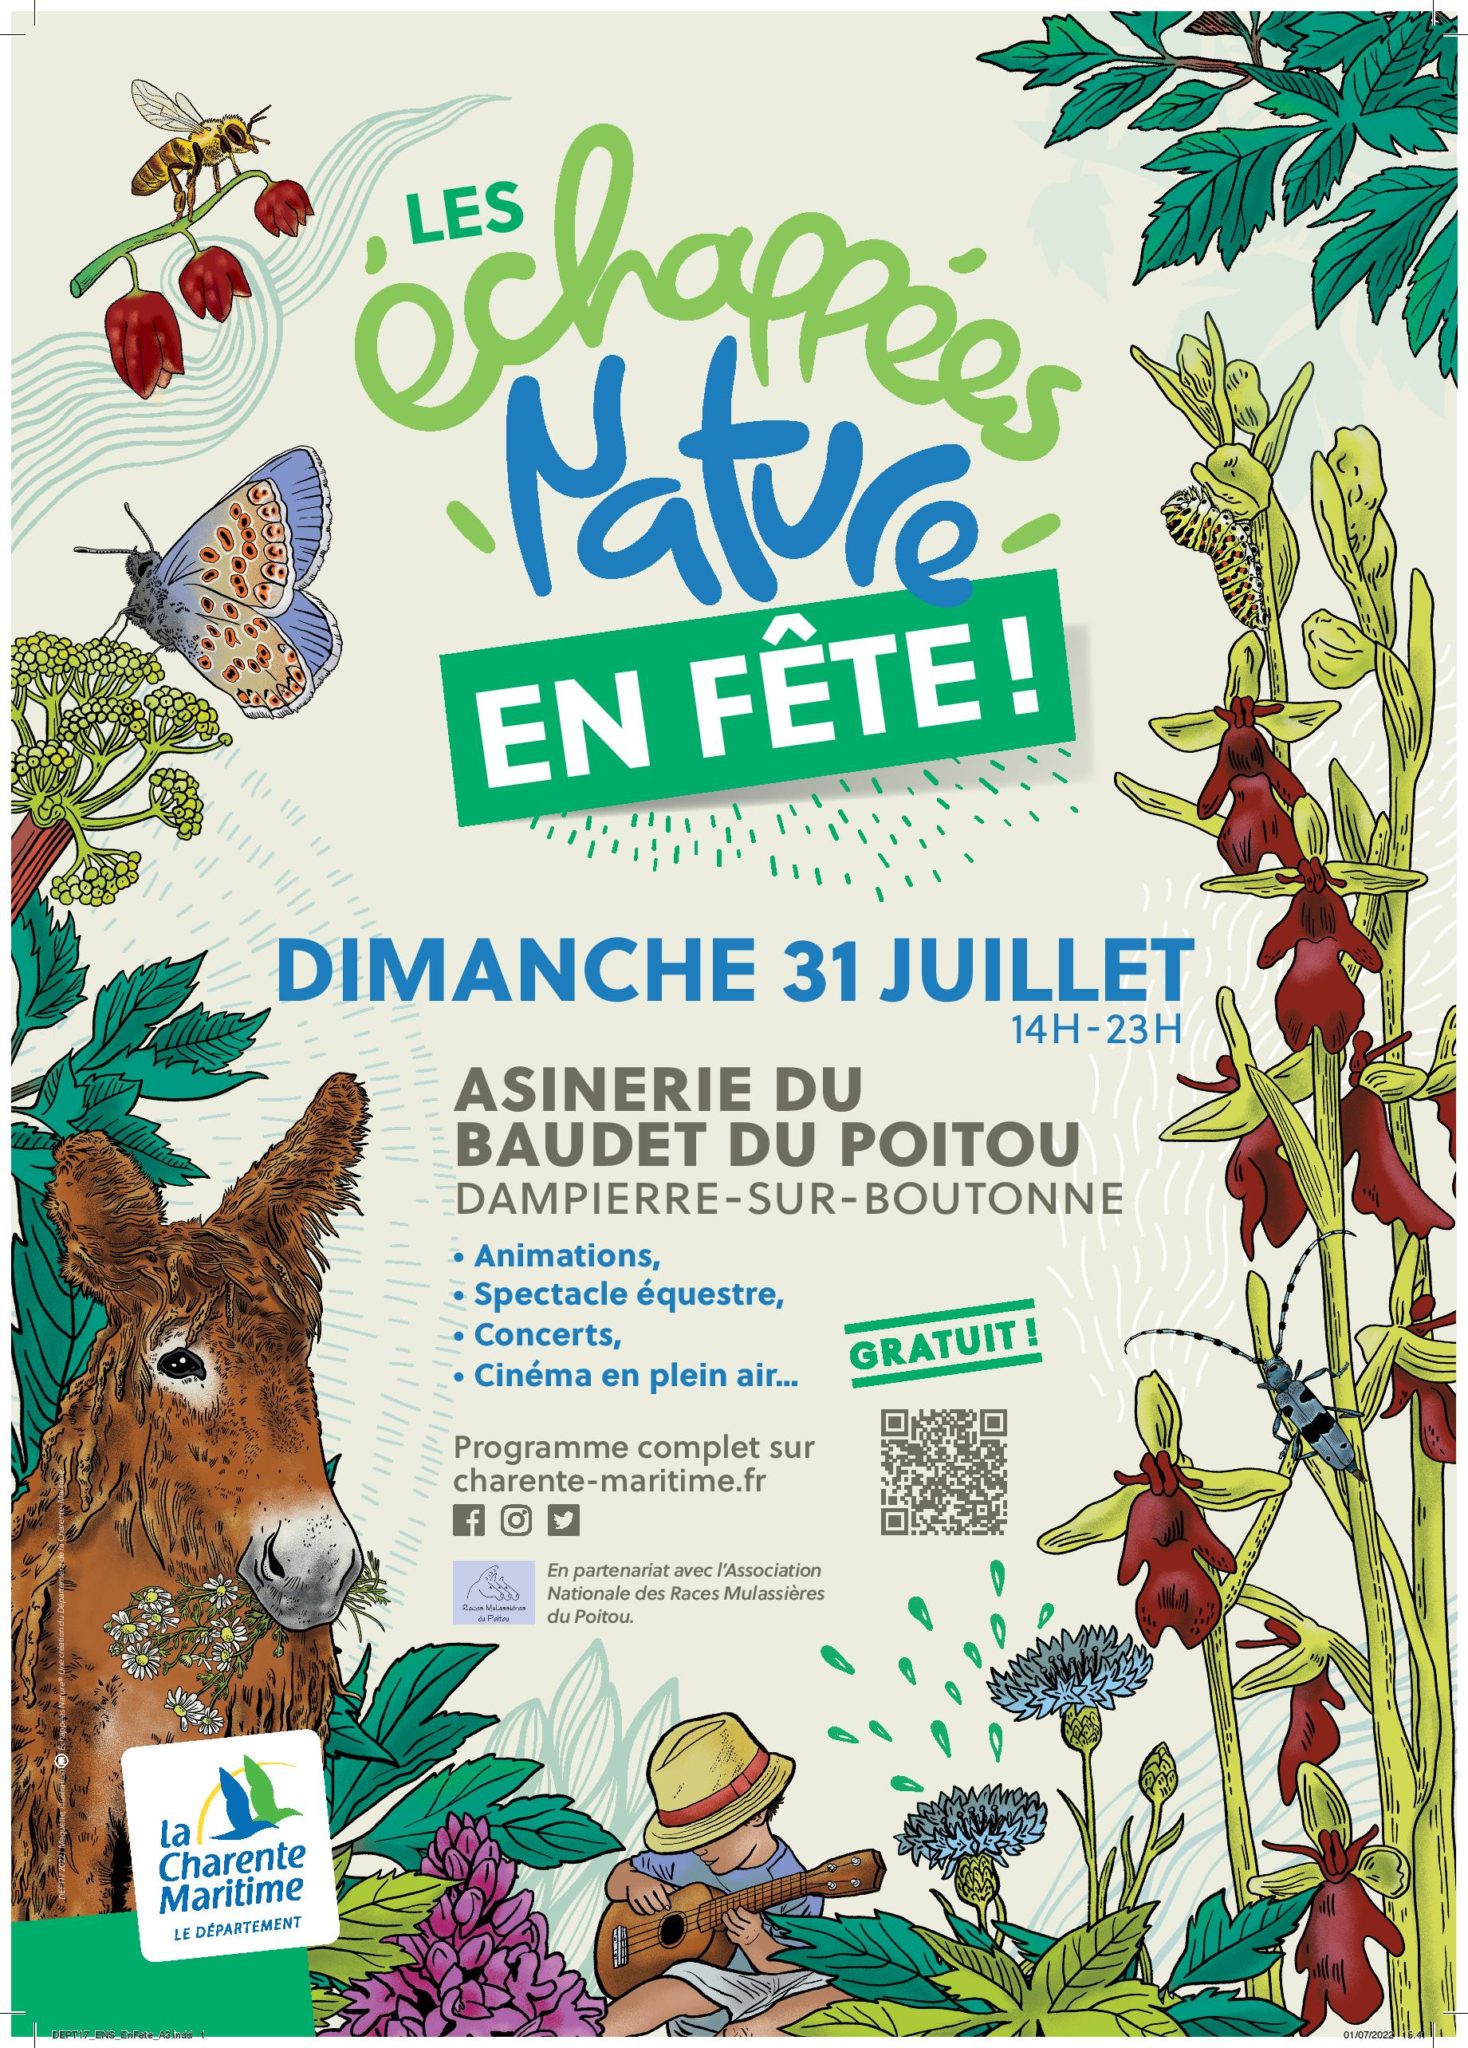 Les Échappées Nature en Fête le 31 juillet | Races mulassieres du Poitou